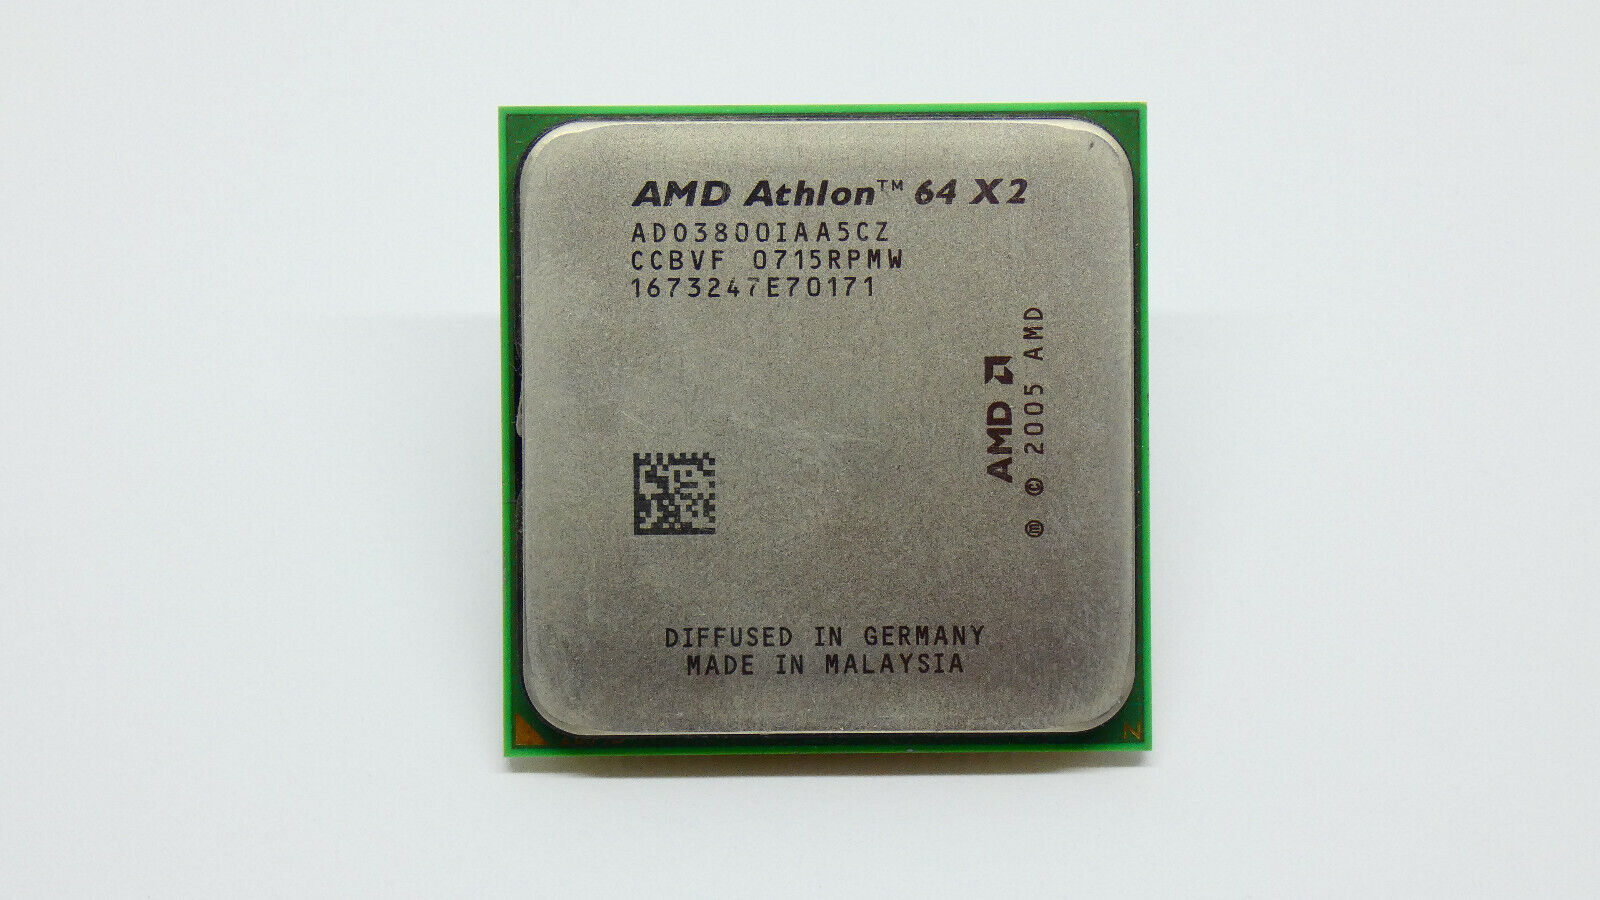 AMD Athlon 64 X2 3800+ - ADO3800IAA5CZ - Socket AM2